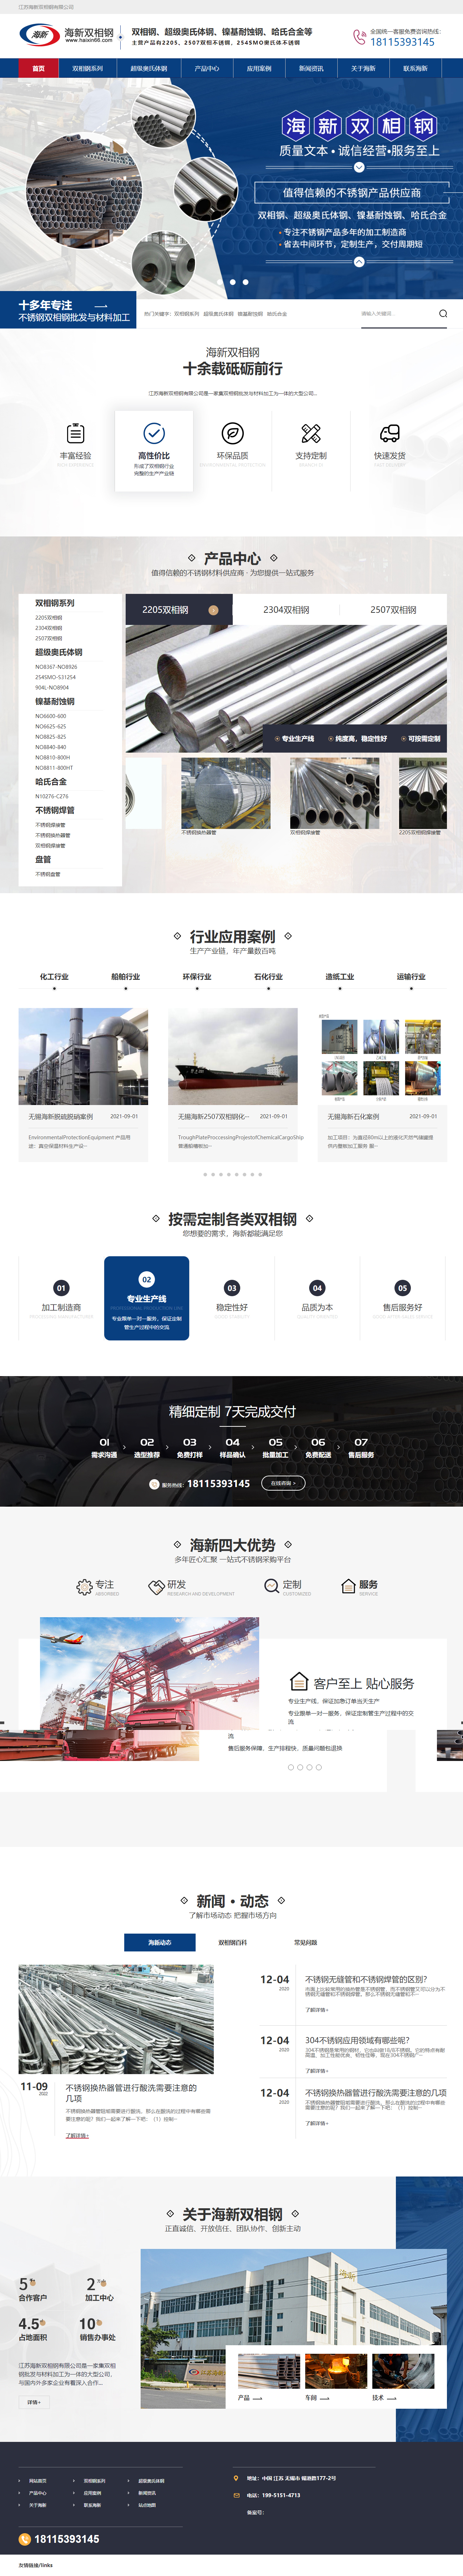 海新2205双相钢营销型网站 PC端预览图